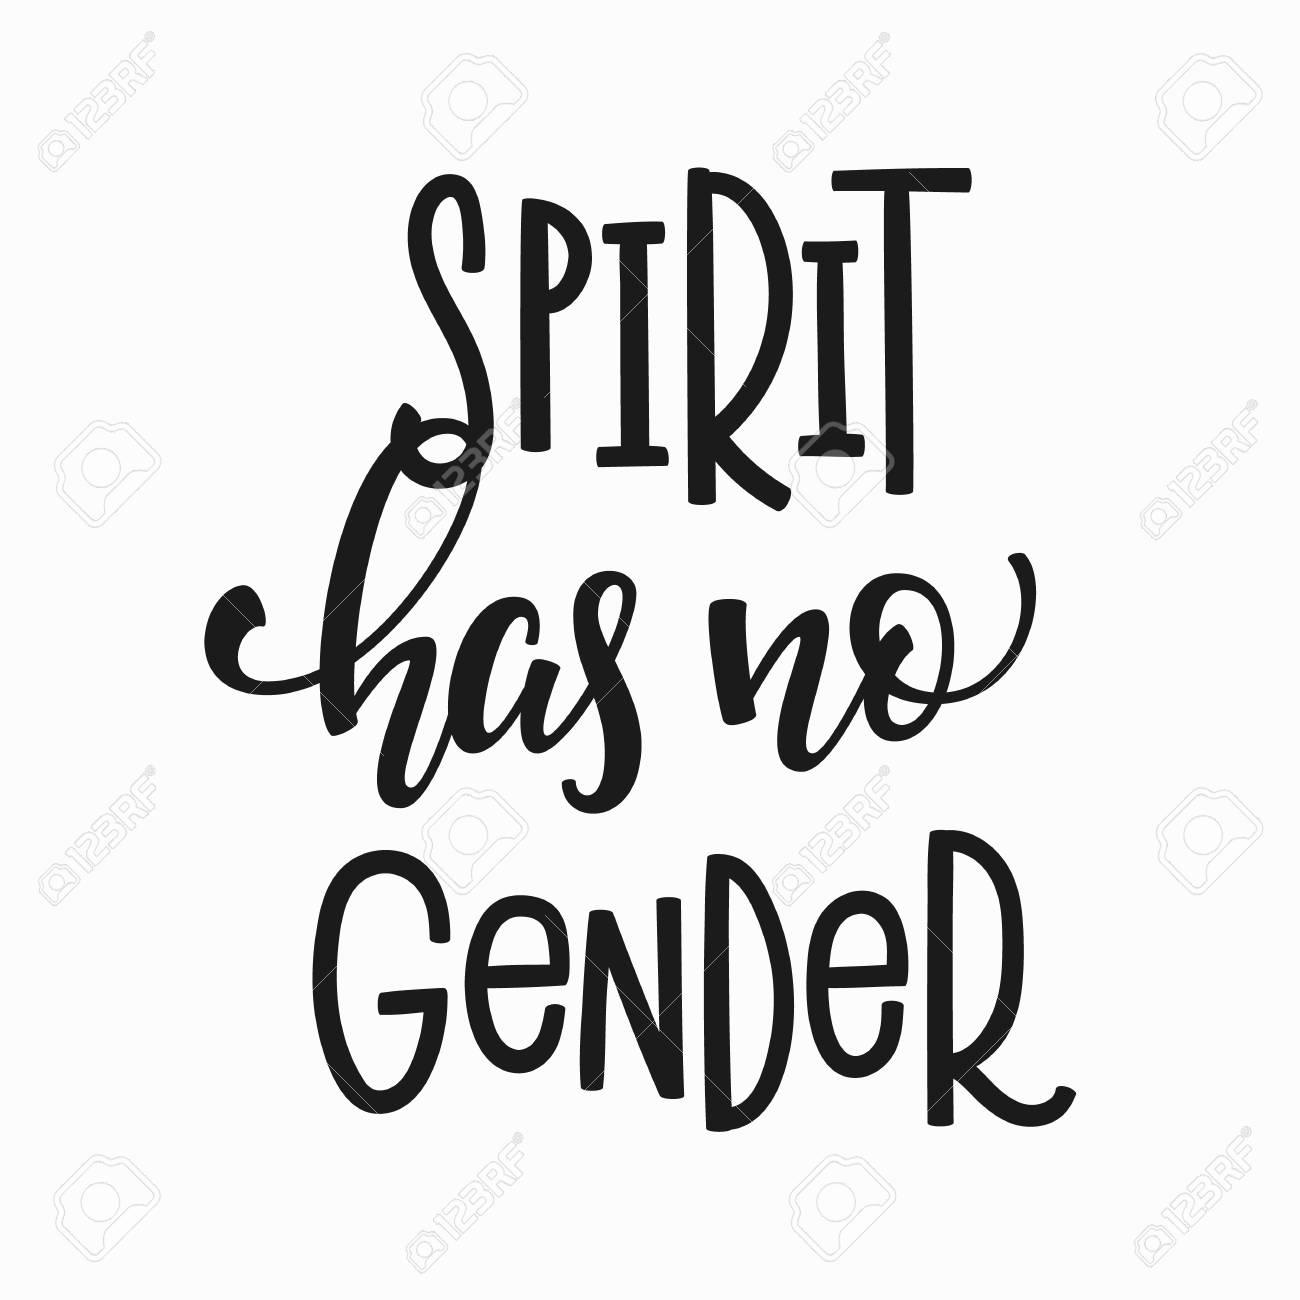 90514508-spirit-has-no-gender-quote-lett